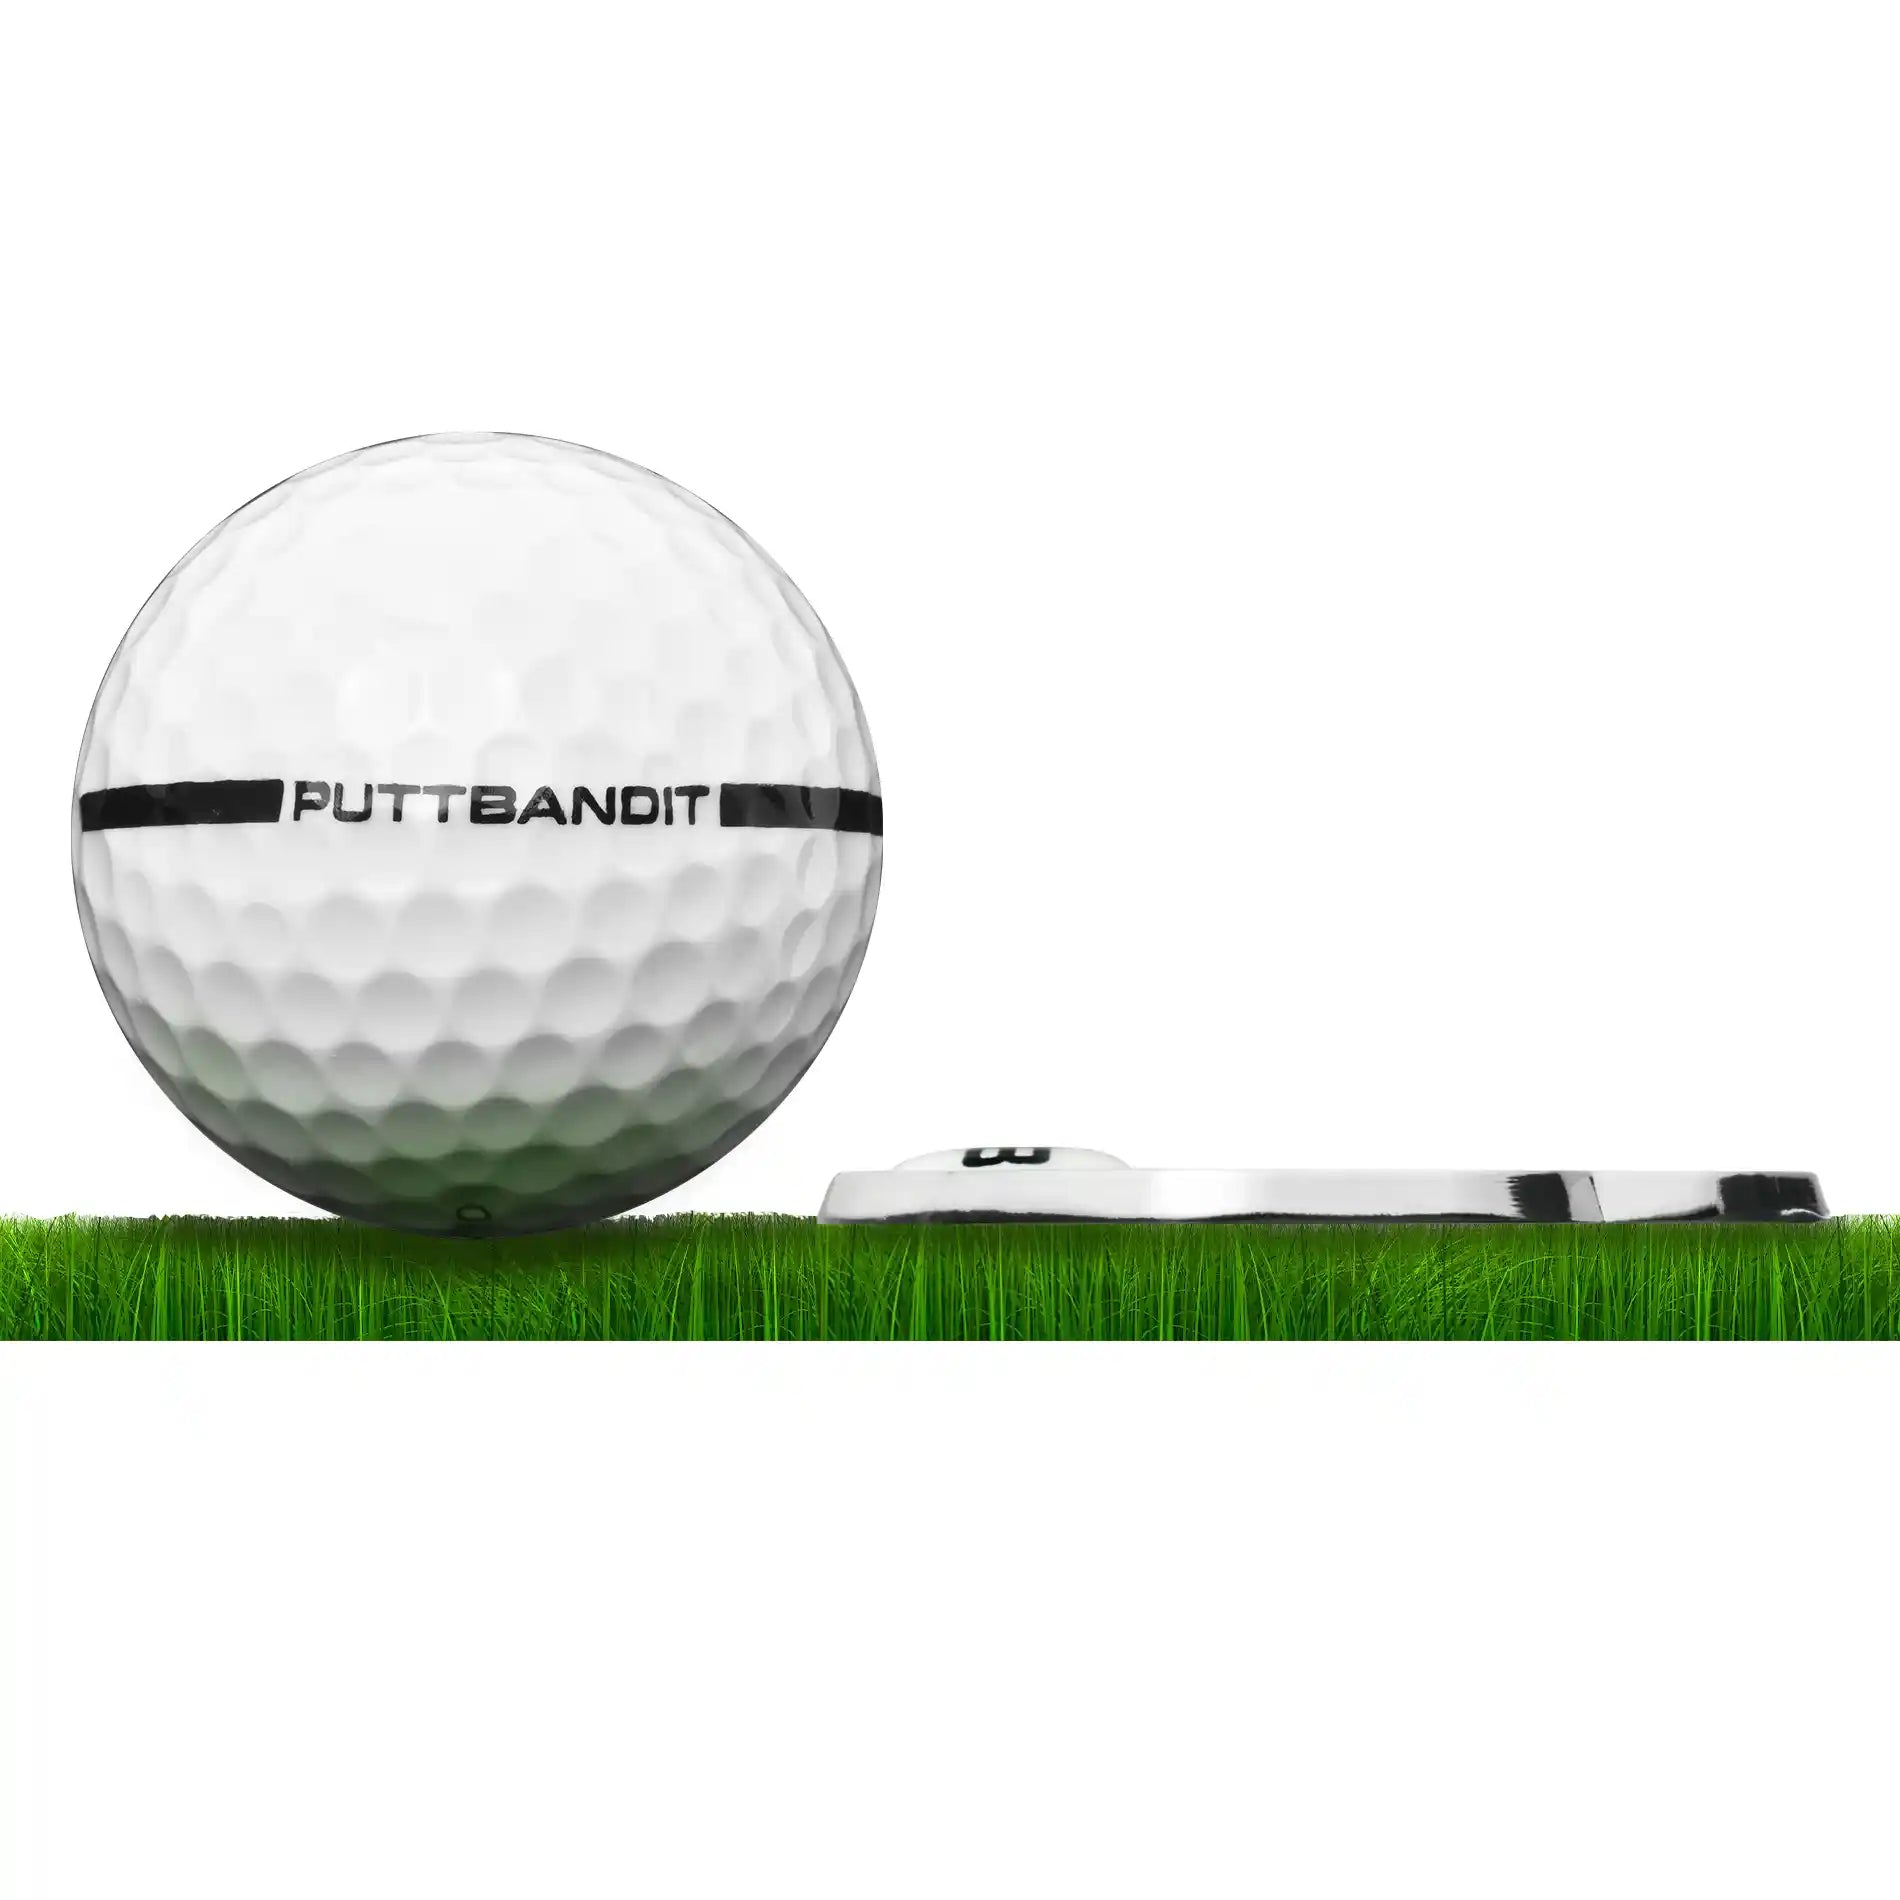 PuttBANDIT LP golf ball marker profile on grass with golf ball 